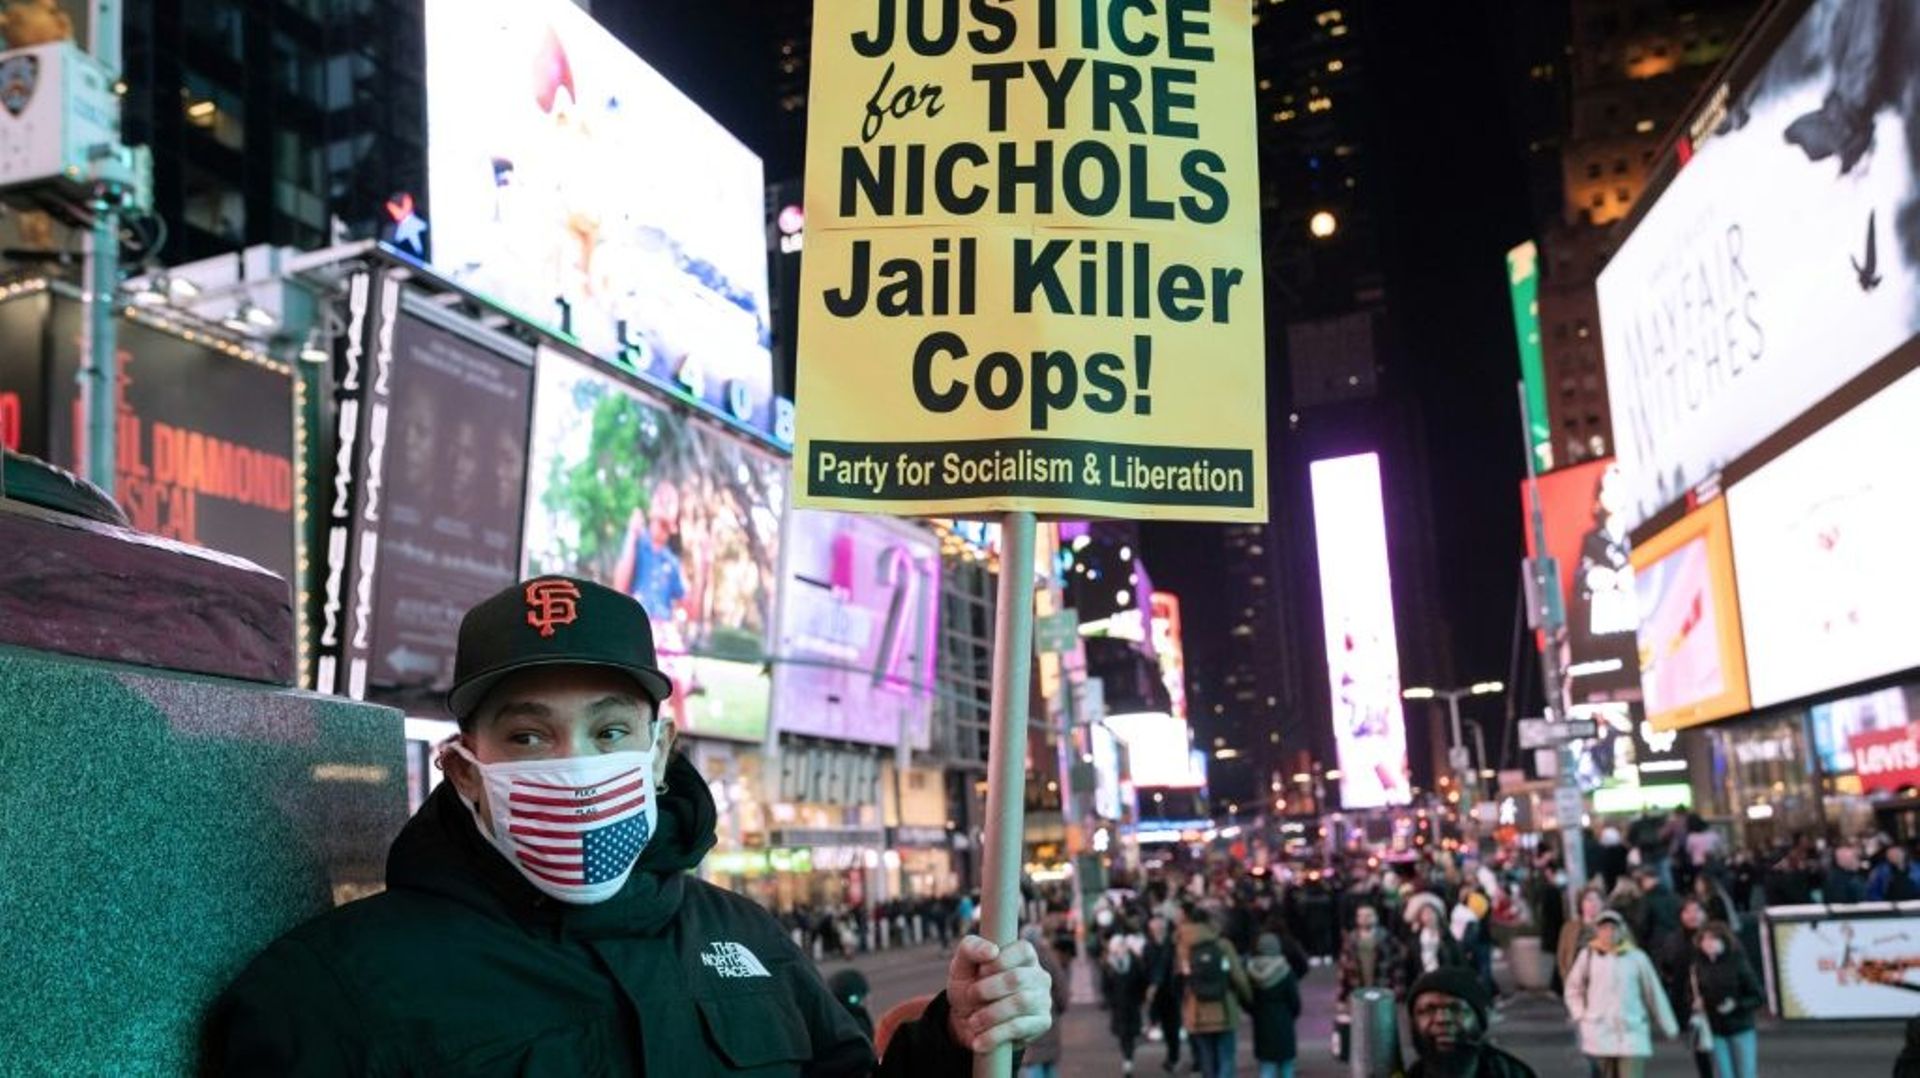 Une manifestation tient une pancarte demandant "Justice pour Tyre Nichols" à New York, le 27 janvier 2023